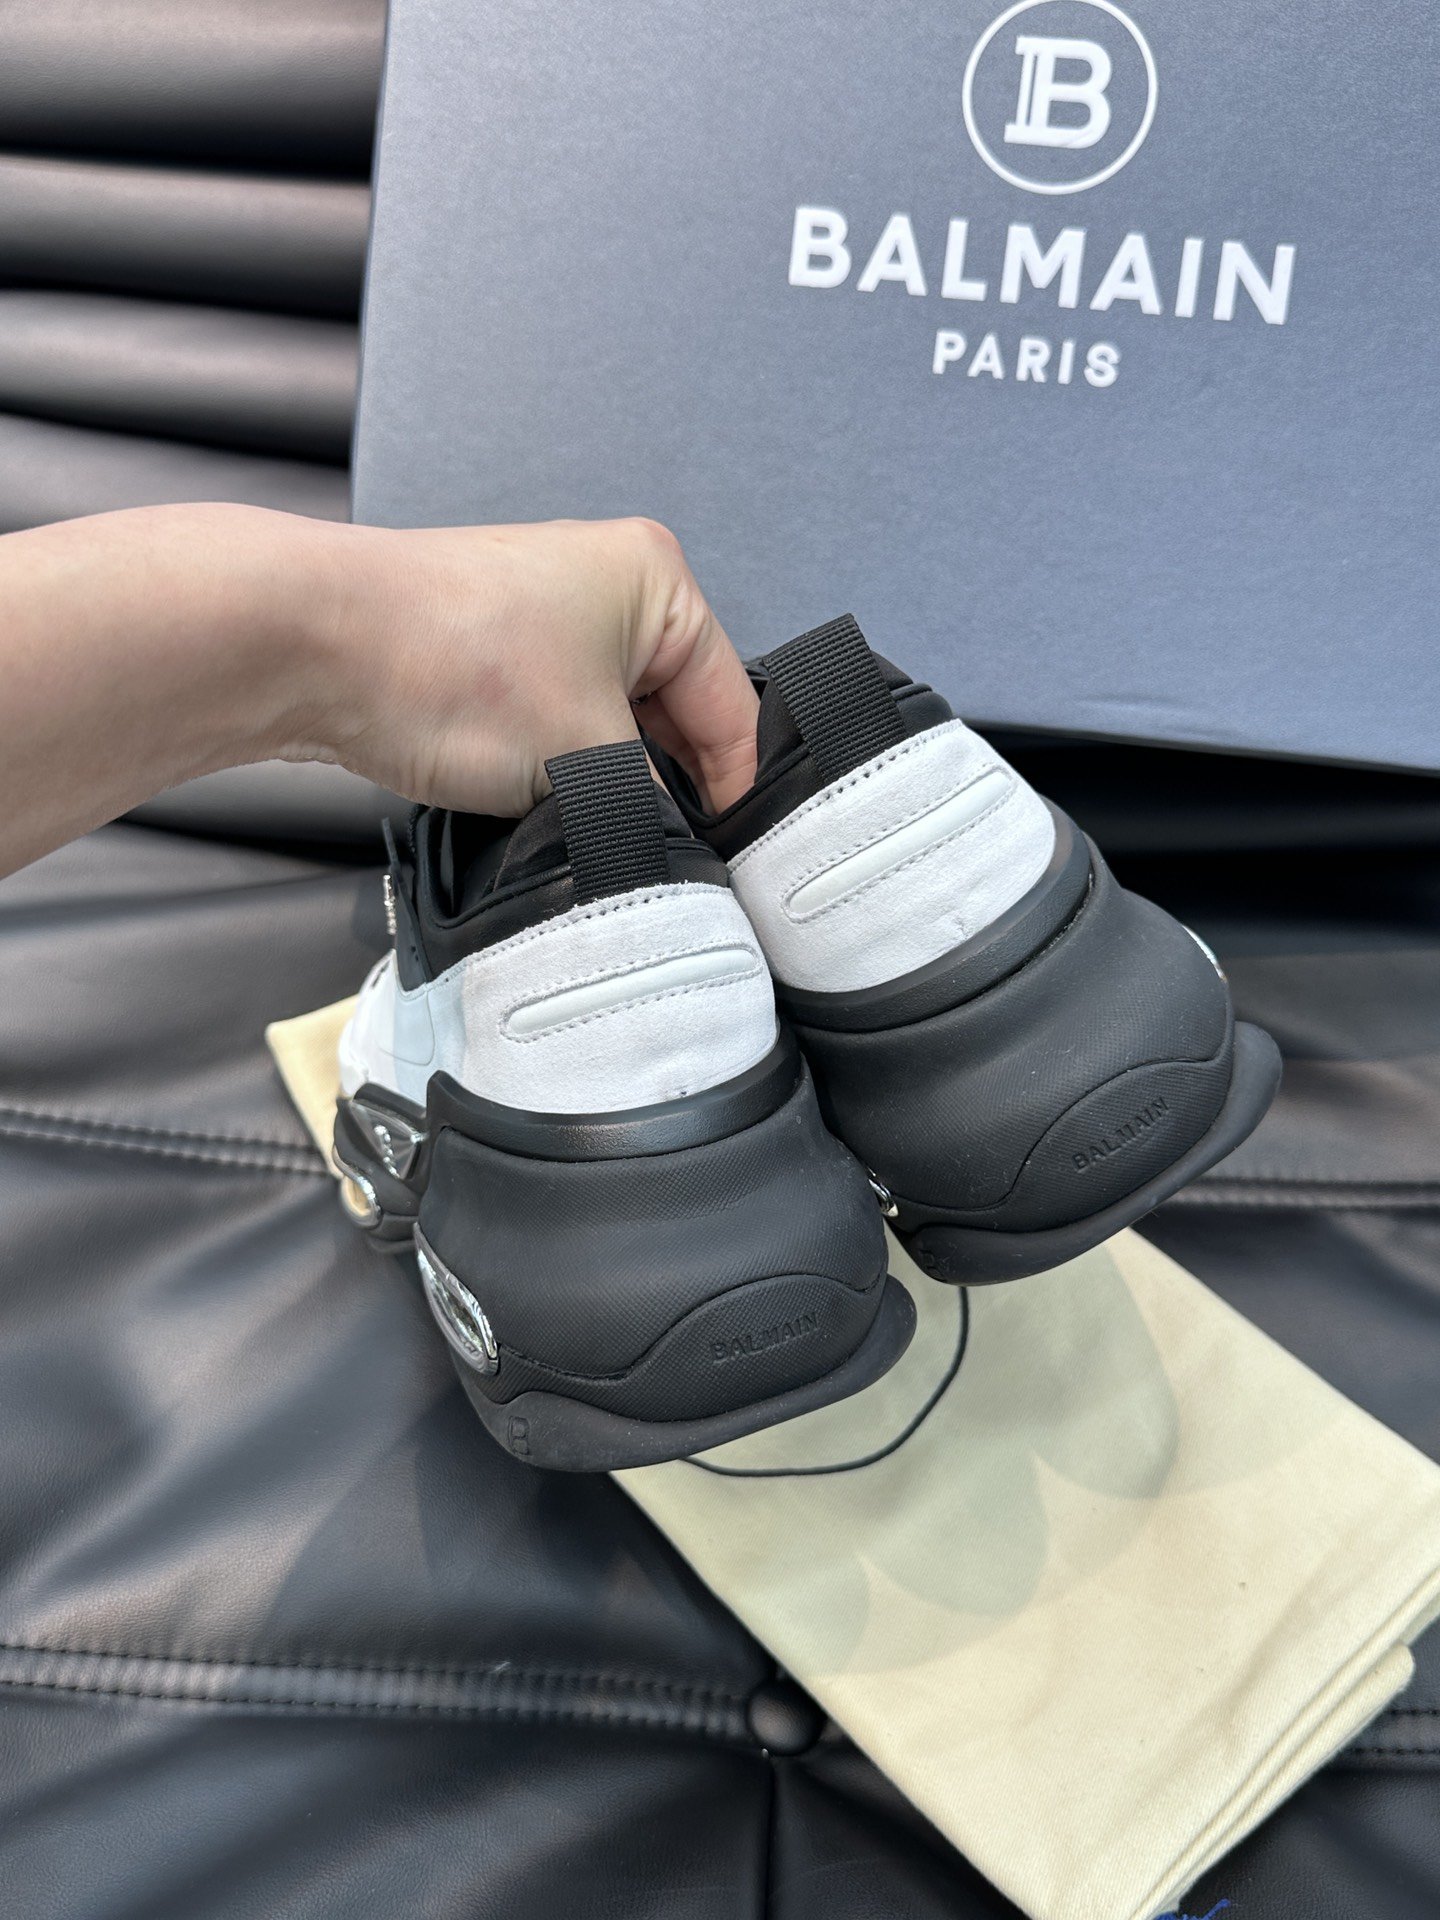 BALMAIN巴尔曼超酷情侣款太空鞋造型太帅了增高8CM妥妥的气场全开！设计师以神话的生物独角兽为灵感创